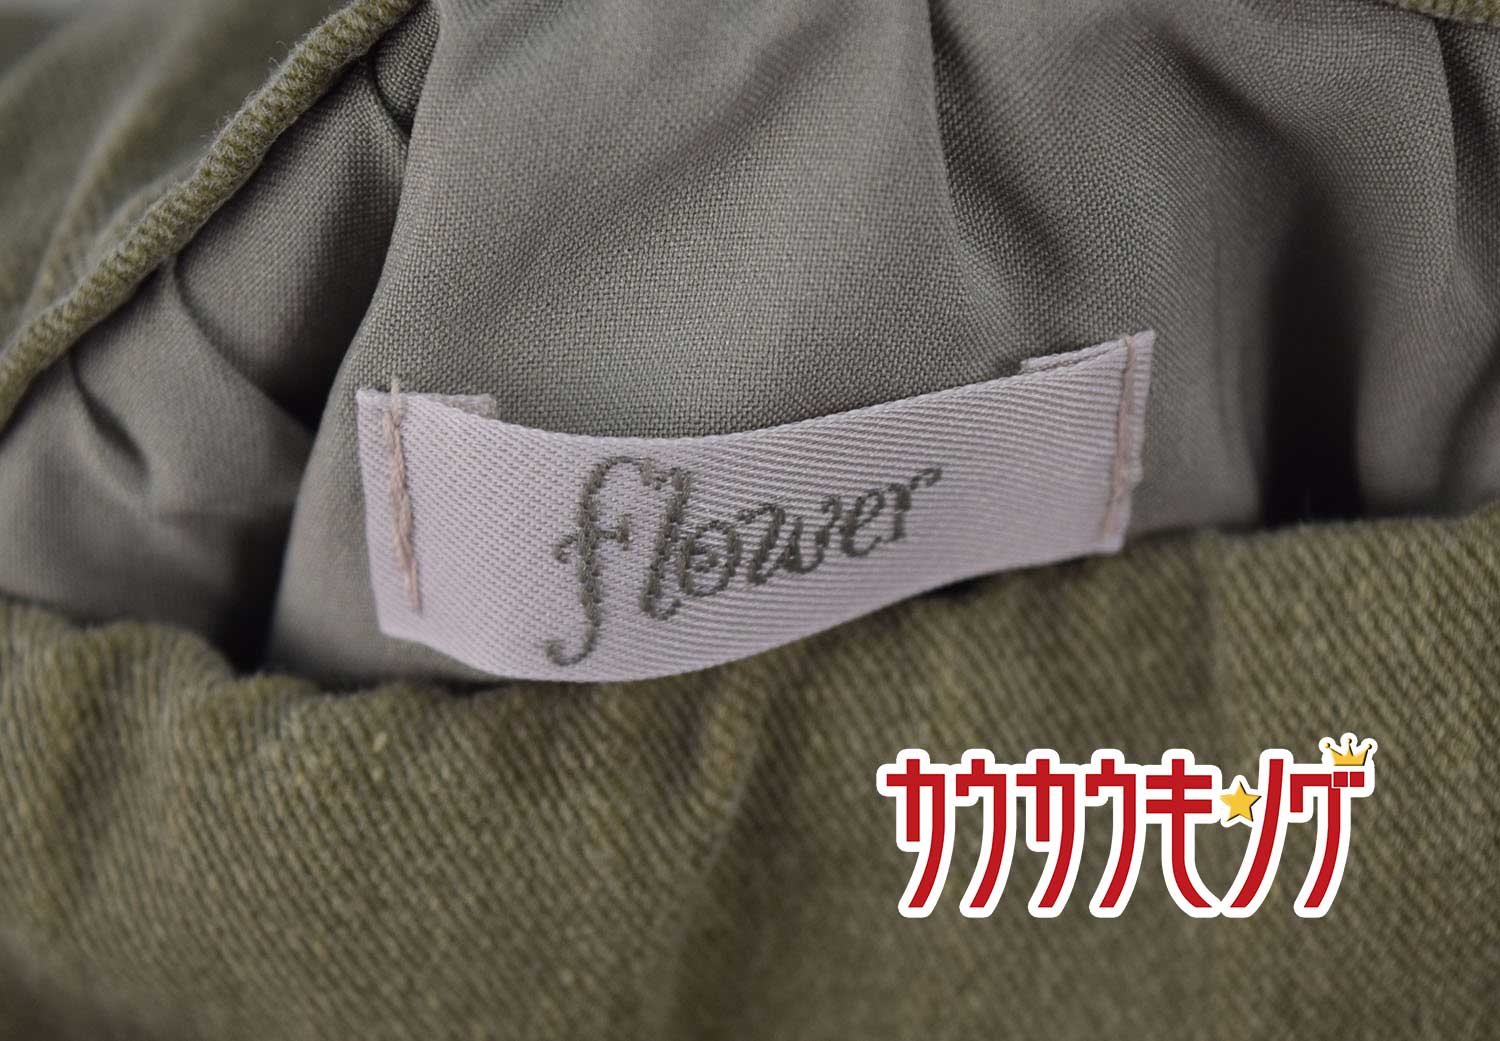 【中古】flower スカート レディース オーリブグリーン カーキ ヒモベルト ポケット サイドジップ ウエスト約31cm